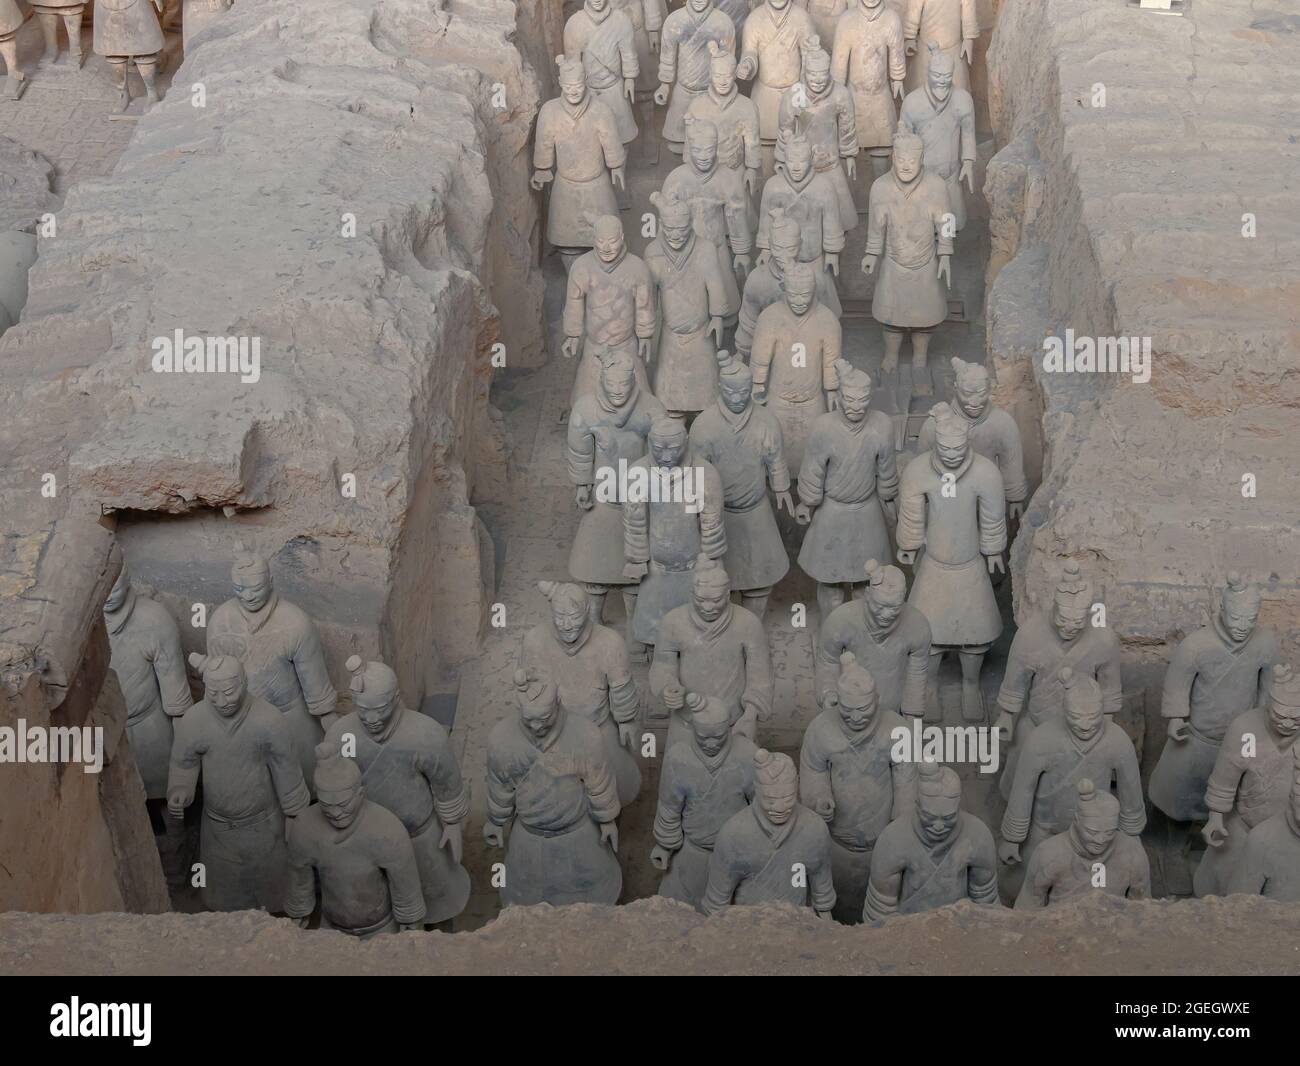 Soldati di terracotta nella tomba del primo imperatore della dinastia Qin dei guerrieri di terracotta nella contea di Lintong, Shaanxi, Xi'an, Cina, Asia Foto Stock